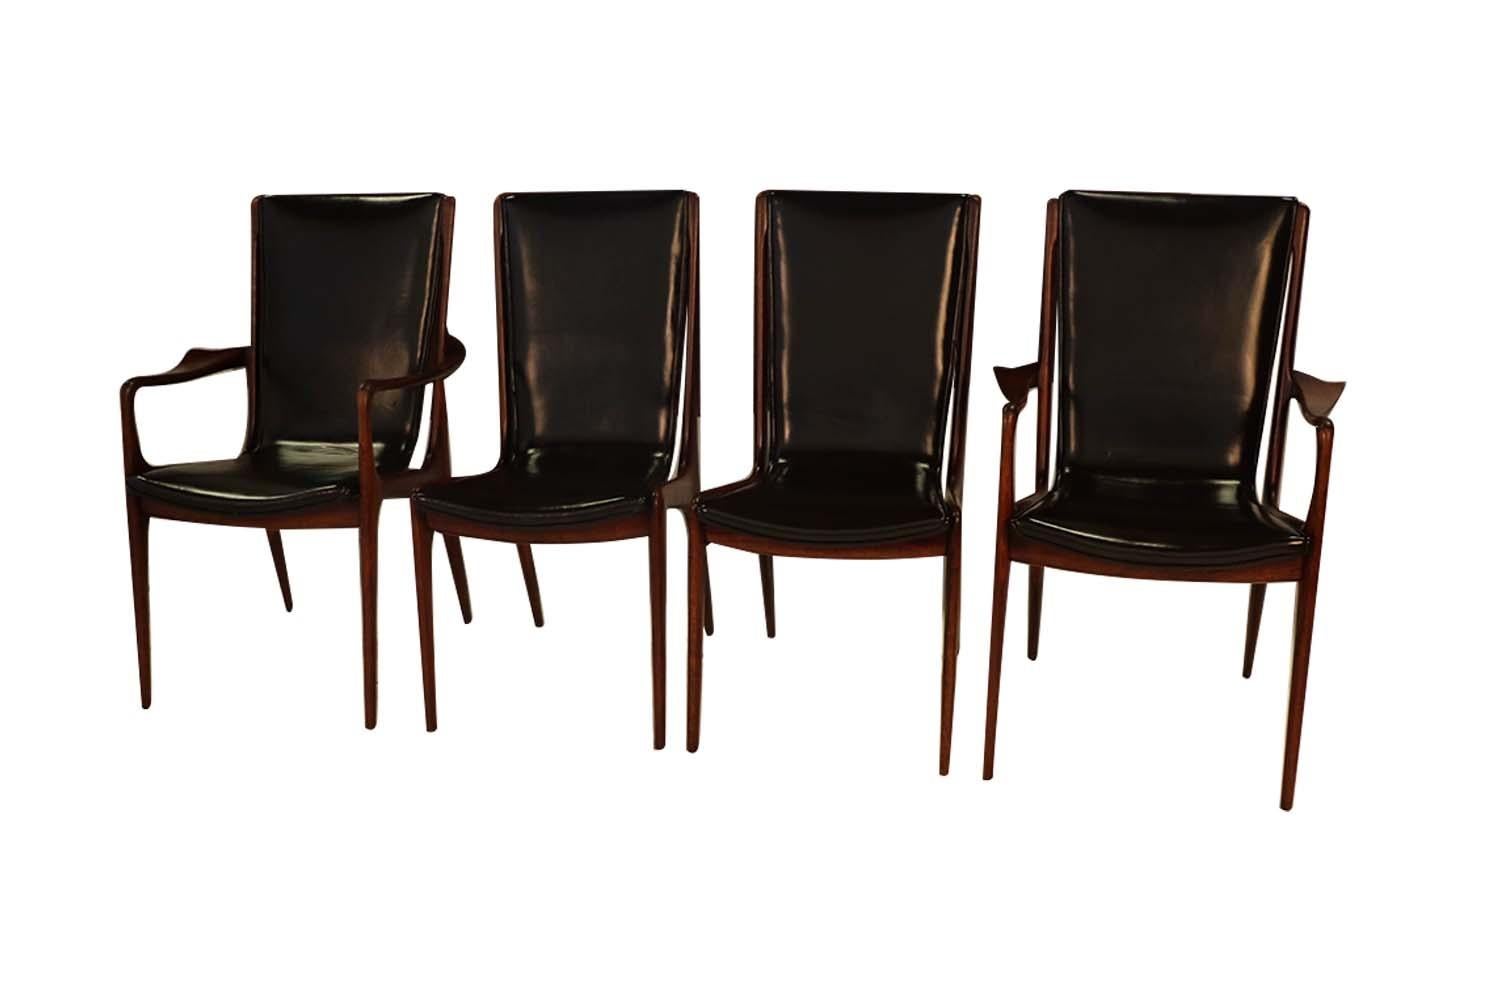 Un bel ensemble rare de quatre chaises de salle à manger en noyer américain, sculptées par Vladimir Kagan, en cuir noir. Ce spectaculaire ensemble de chaises de salle à manger en noyer américain se compose de deux chaises latérales VK 101 et de deux